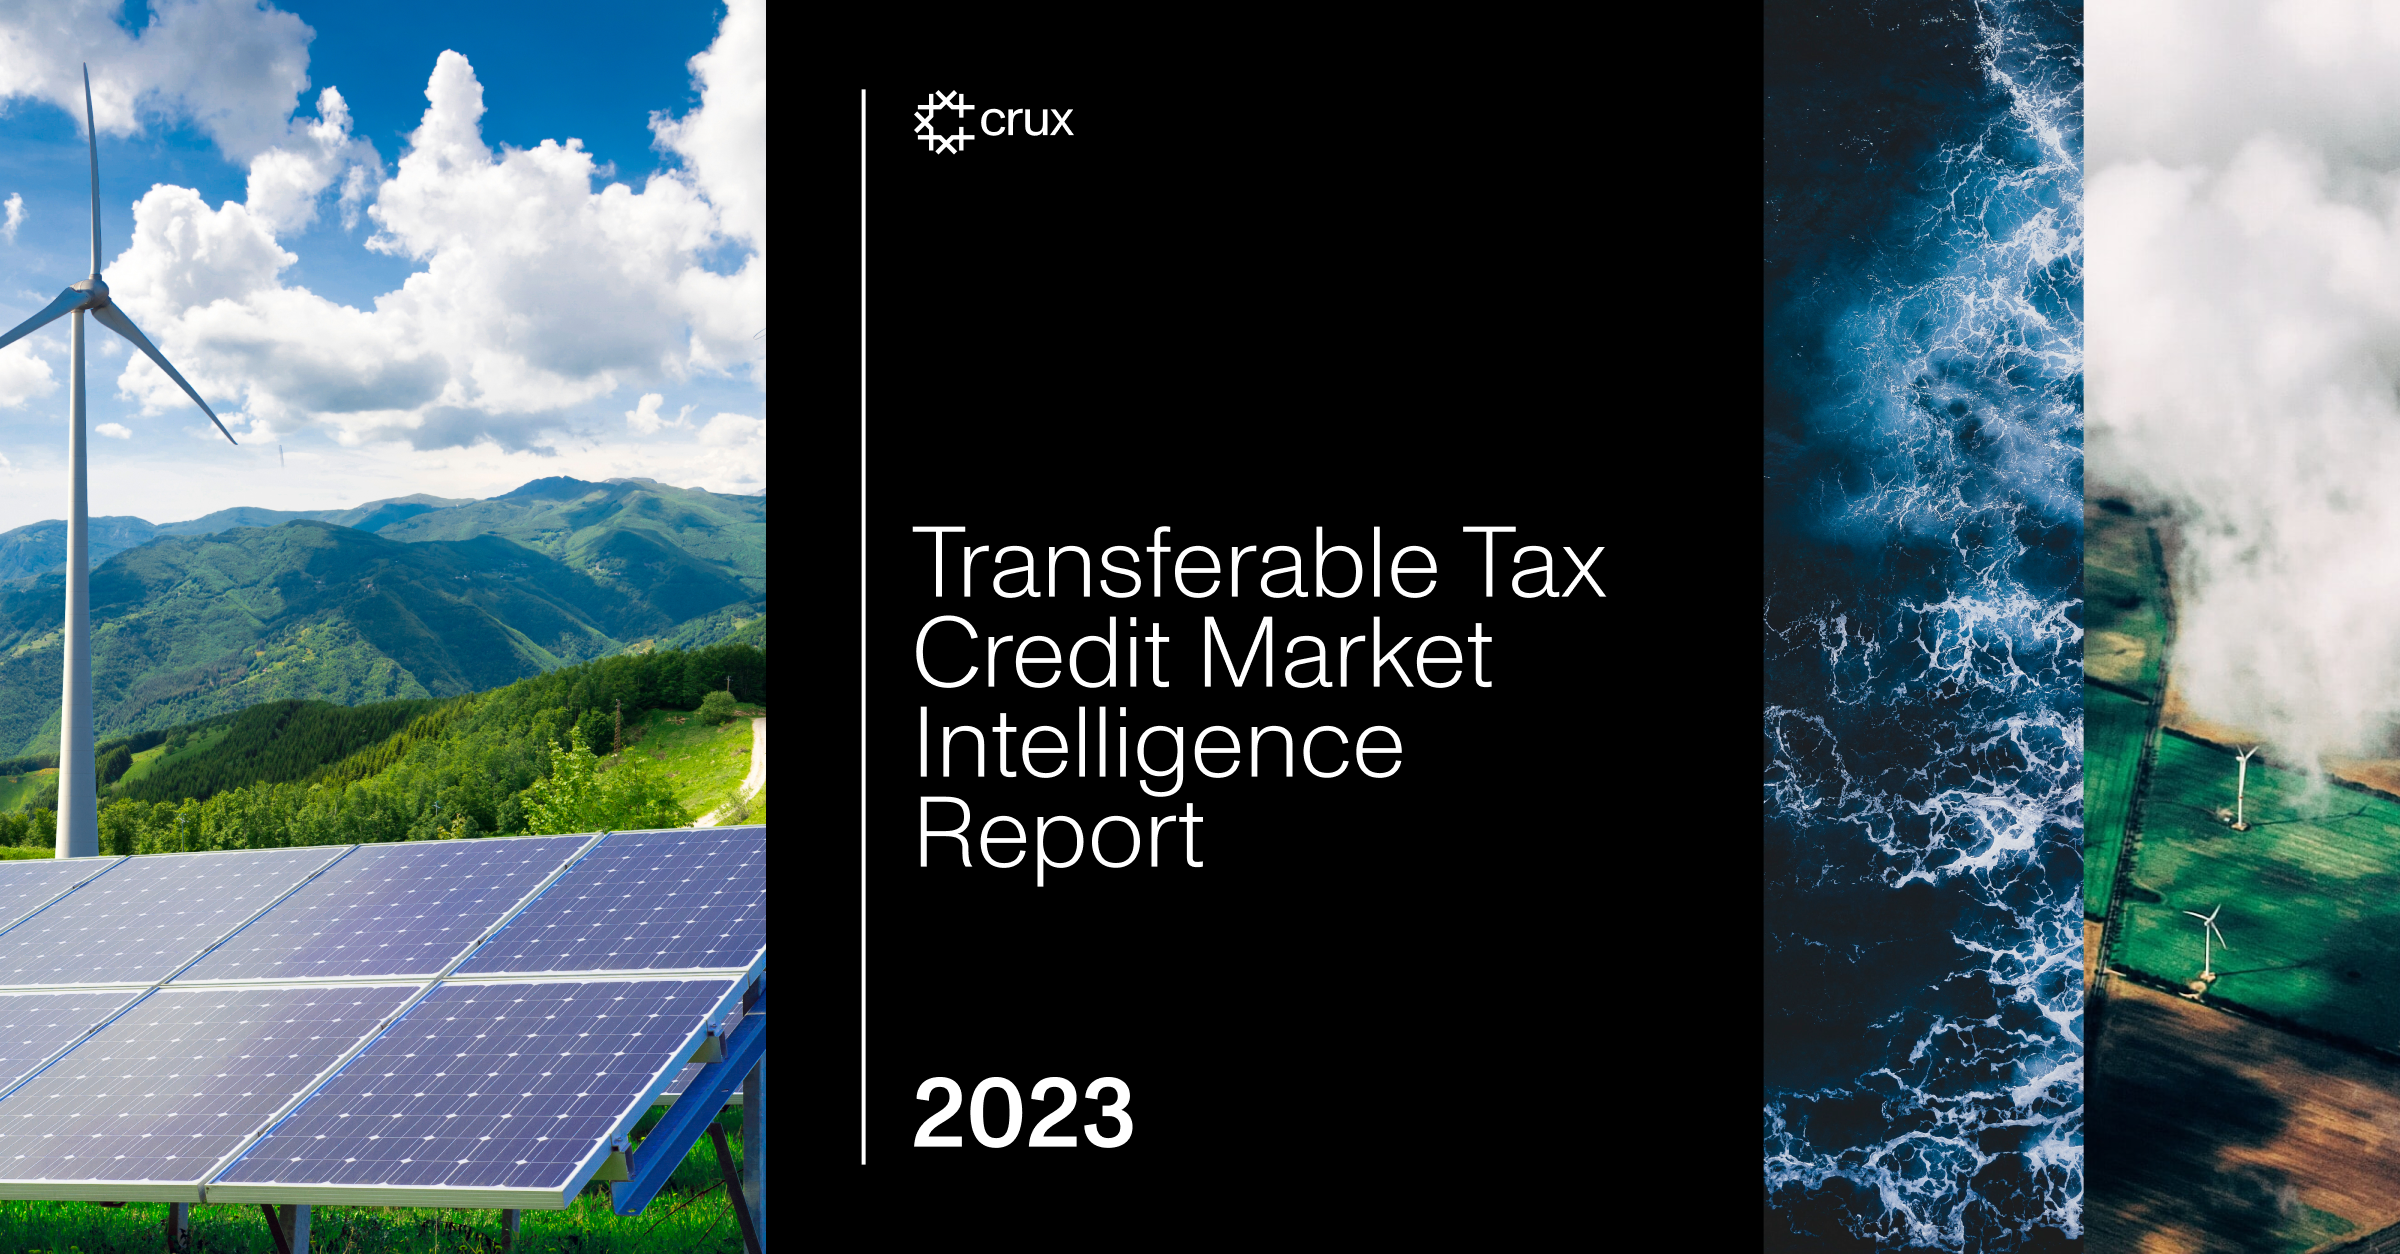 รายงานข่าวกรองตลาดเครดิตภาษีภาษีที่สามารถโอนได้ของ Crux ปี 2023 | กรีนบิส